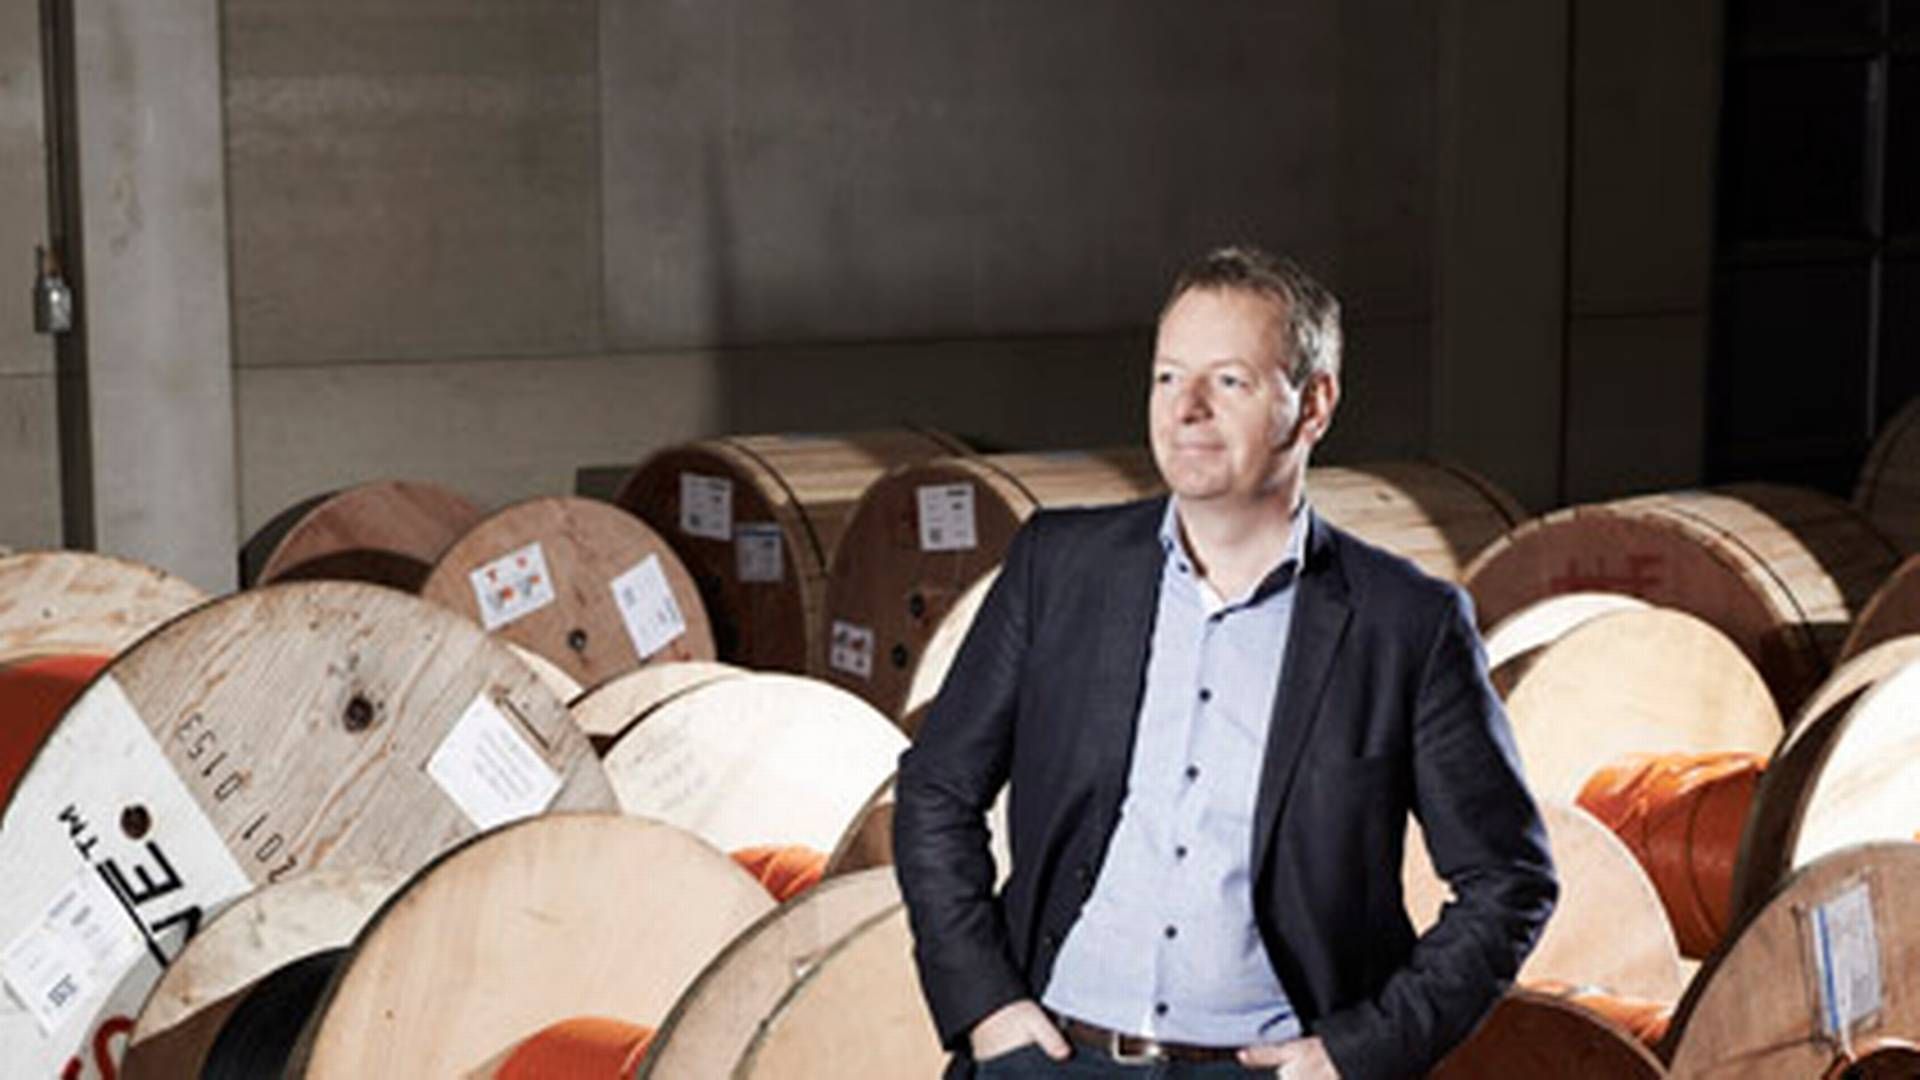 De bruger formuer i det tidligere Syd Energi, men topchef Niels Duedahl sidder stadig på den mest solide i gruppen af de største danske selskaber. | Foto: SE